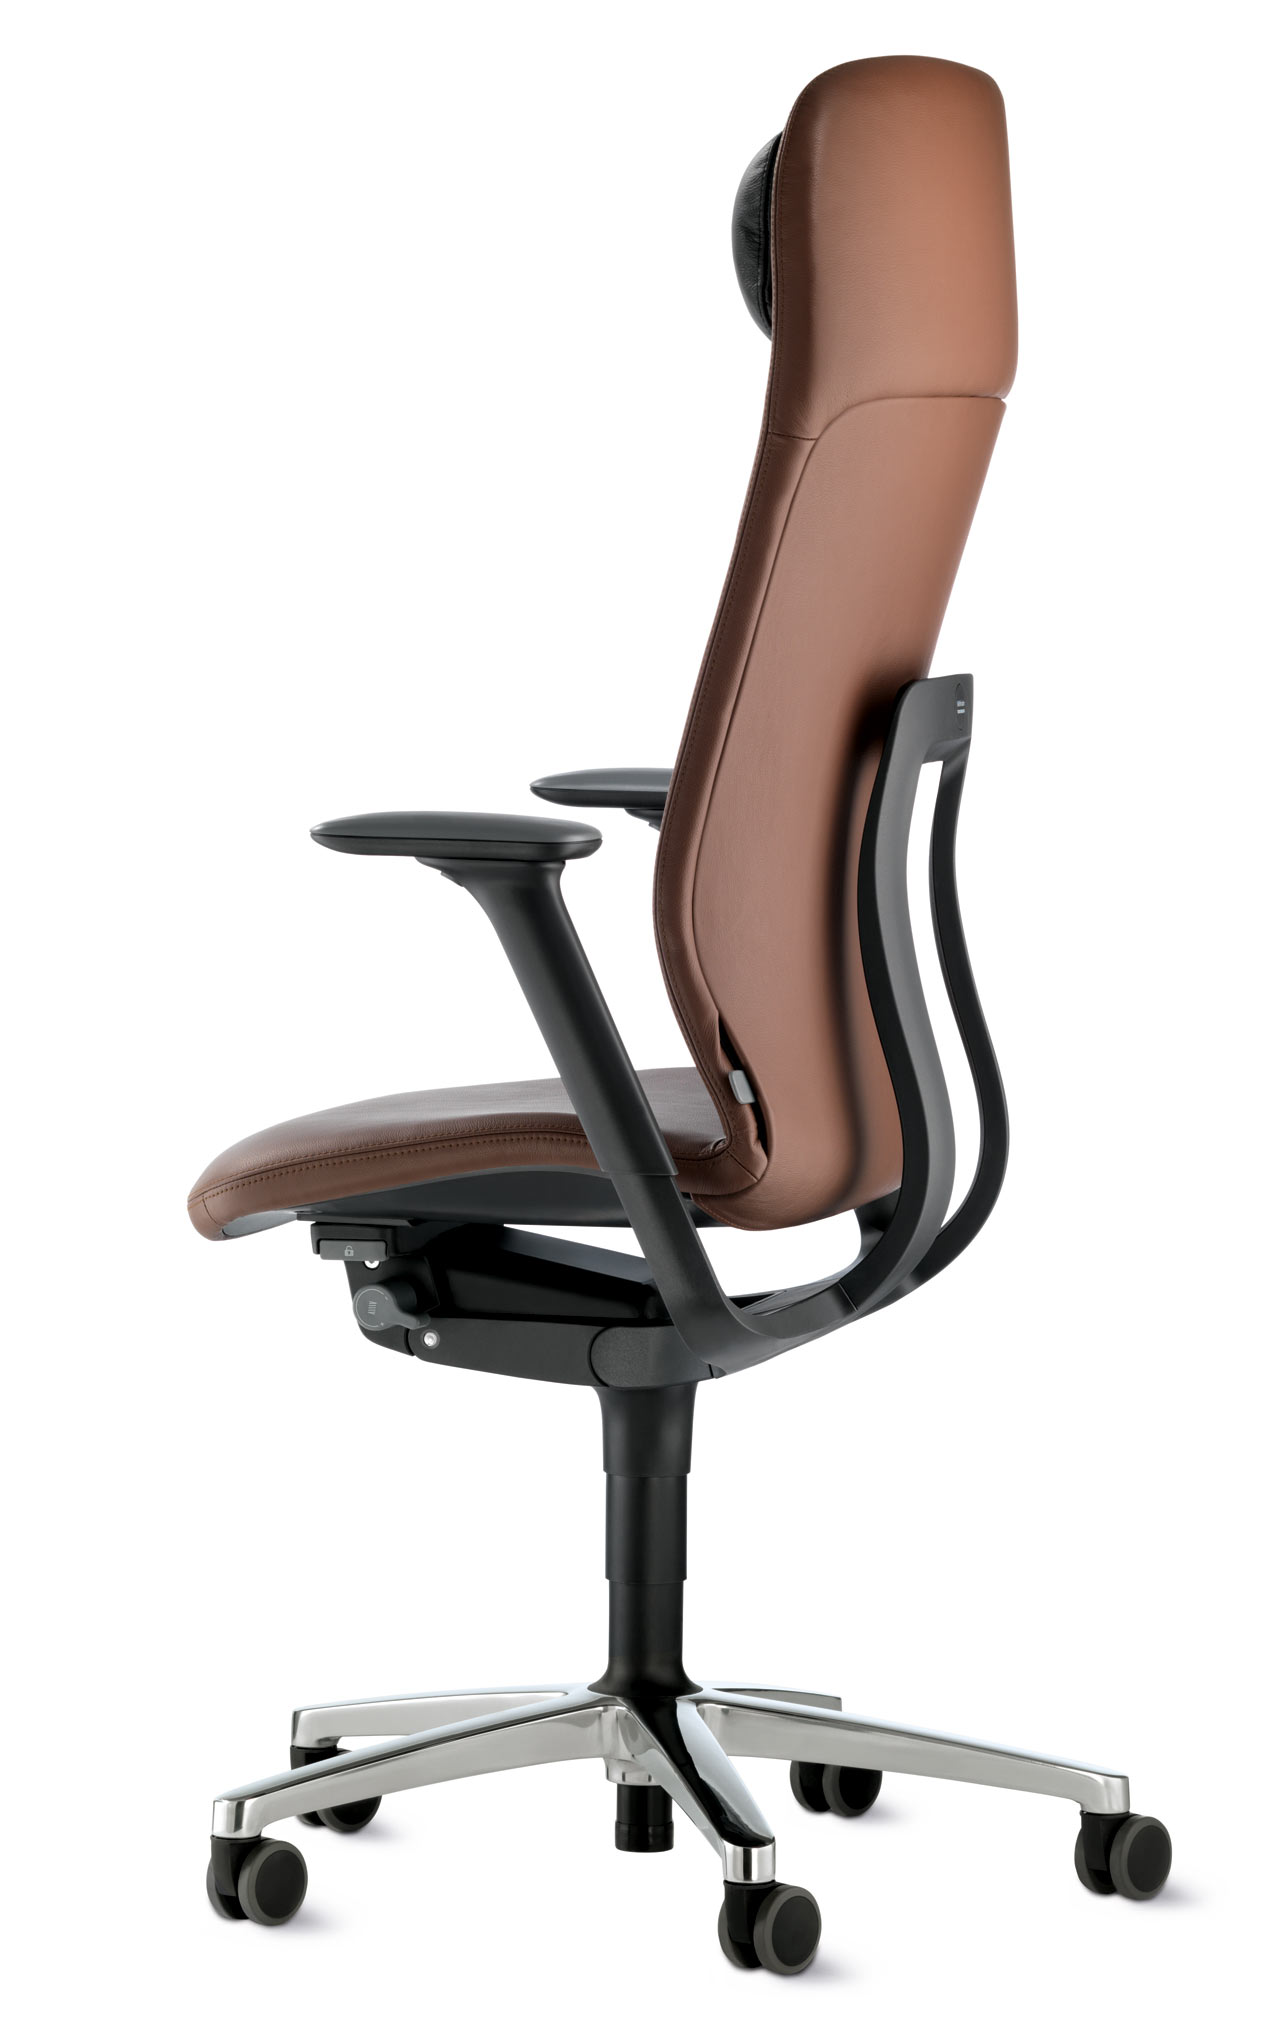 https://design-milk.com/images/2019/12/Decon-Wilkhahn-19_AT_Final-High-Height-Headrest-Neck-Rest.jpg